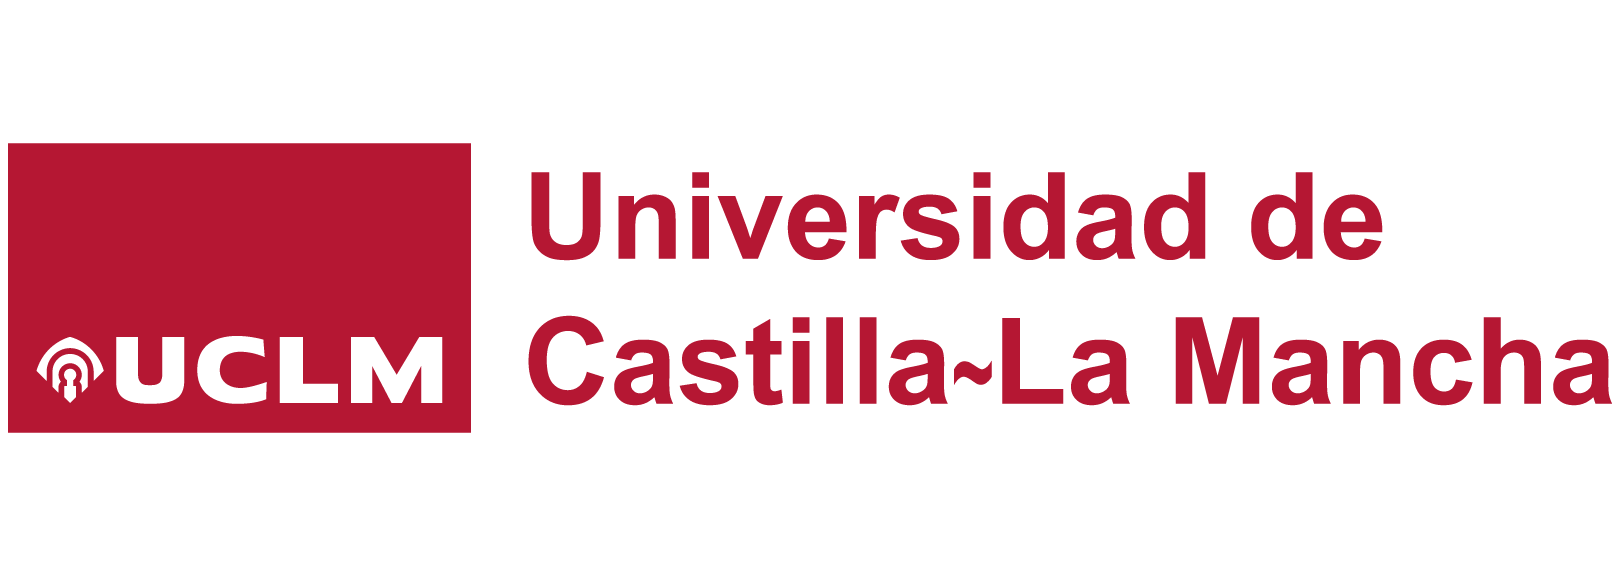 banner_Universidad de Castilla La Mancha